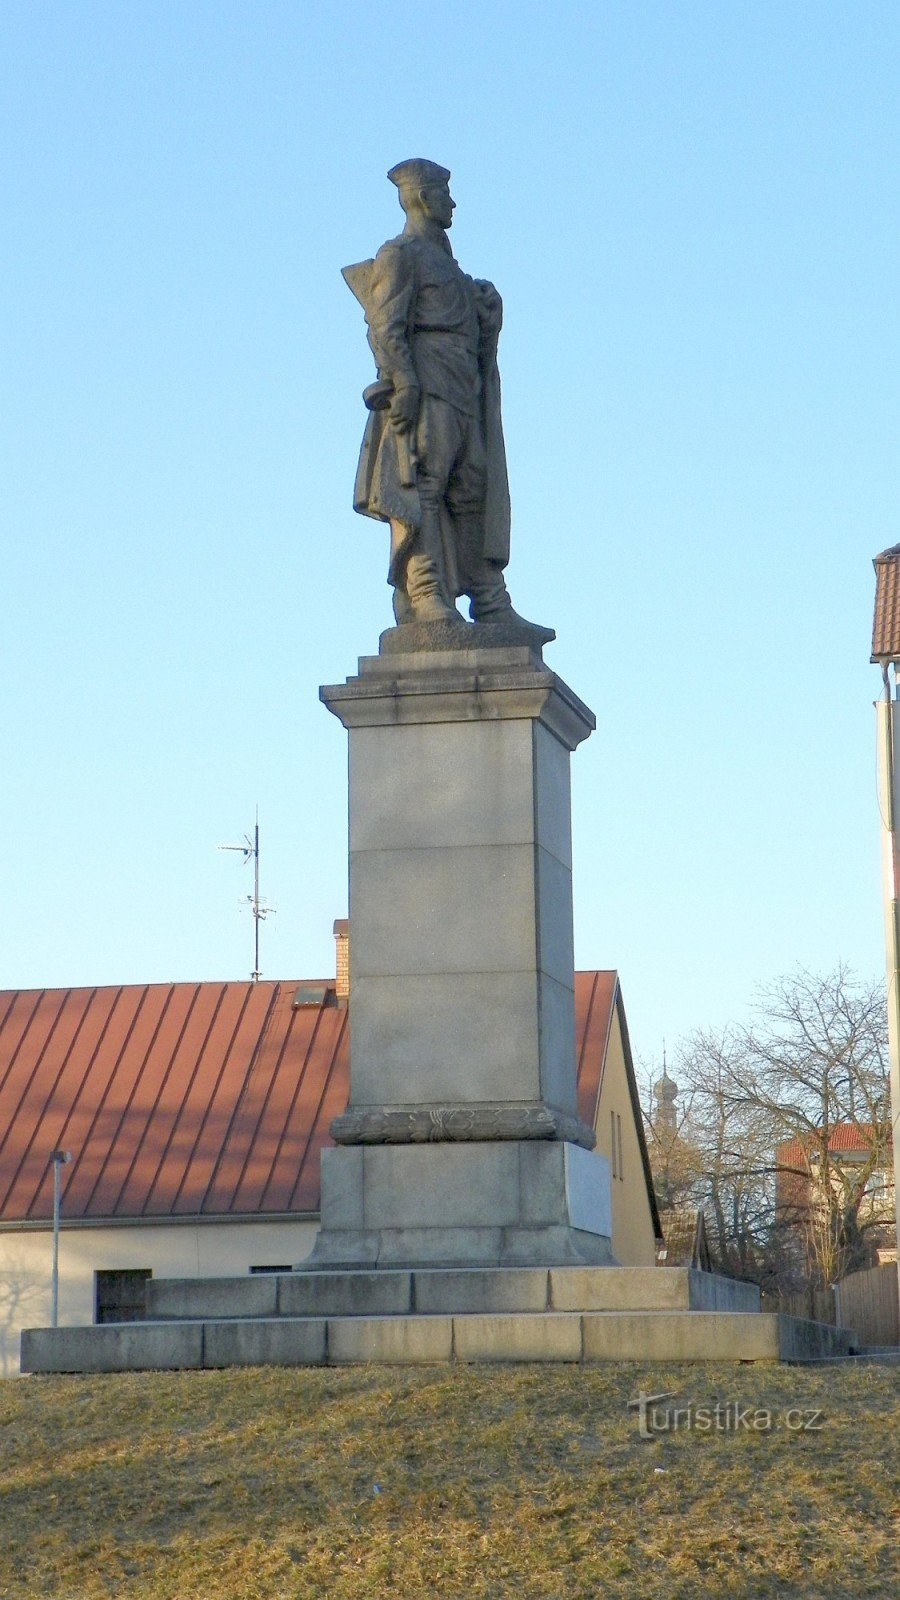 La statue d'un soldat de l'Armée rouge - le monument de la libération